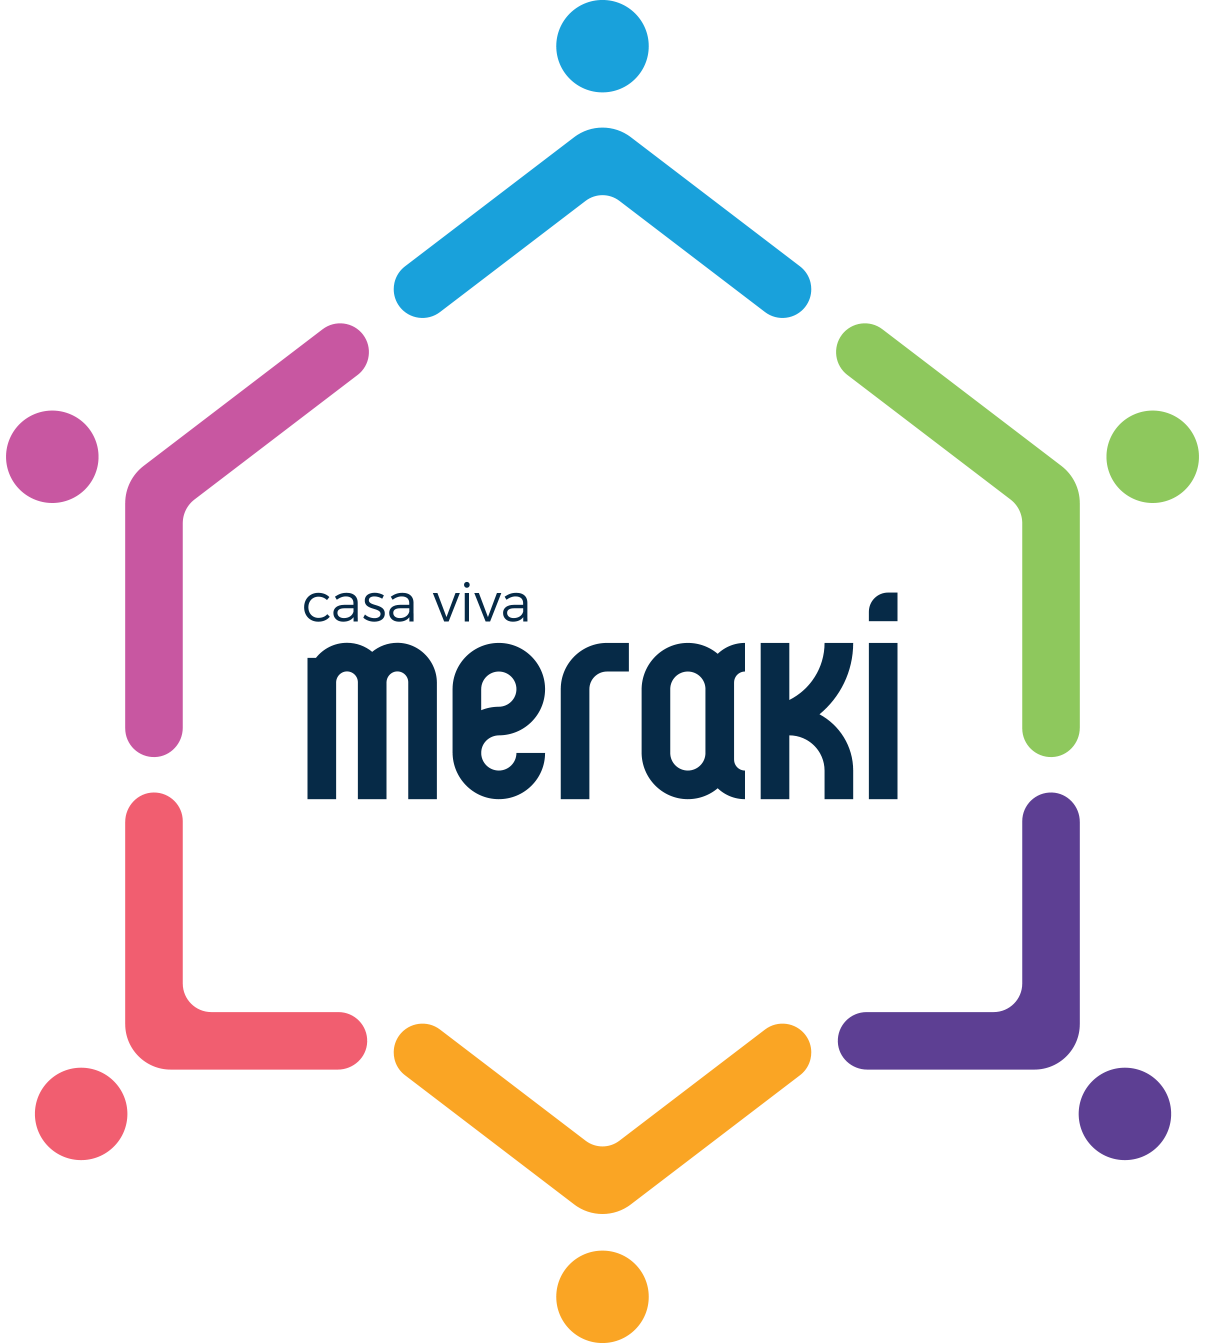 Logotipo da Casa Viva Meraki com escrita em azul escuro e traços coloridos ao redor das palavras